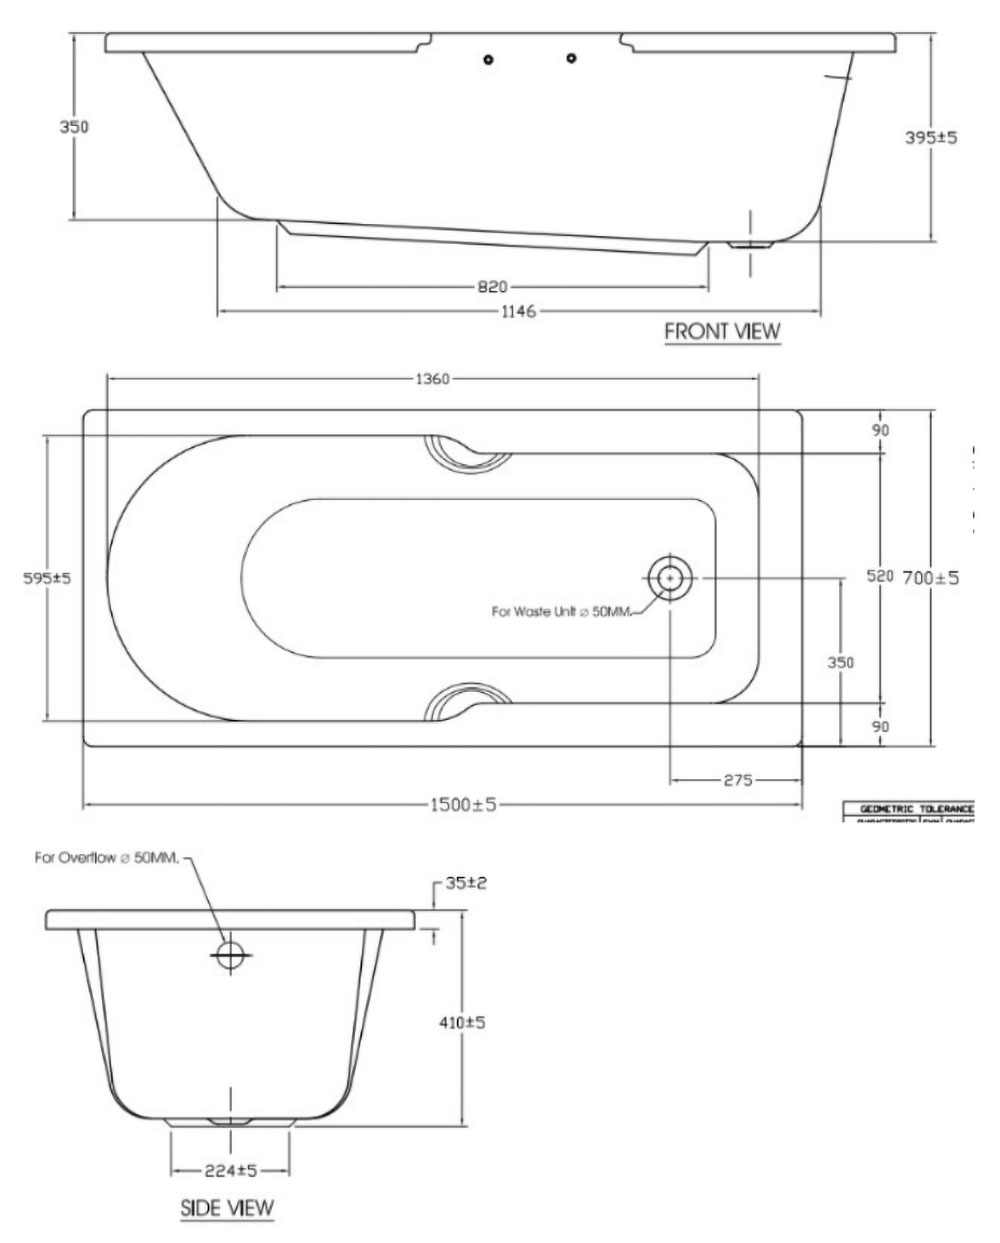 Bản-vẽ-kĩ-thuật-Bồn-tắm-American-Standard-7140-WT-Studio-xây-1.5m